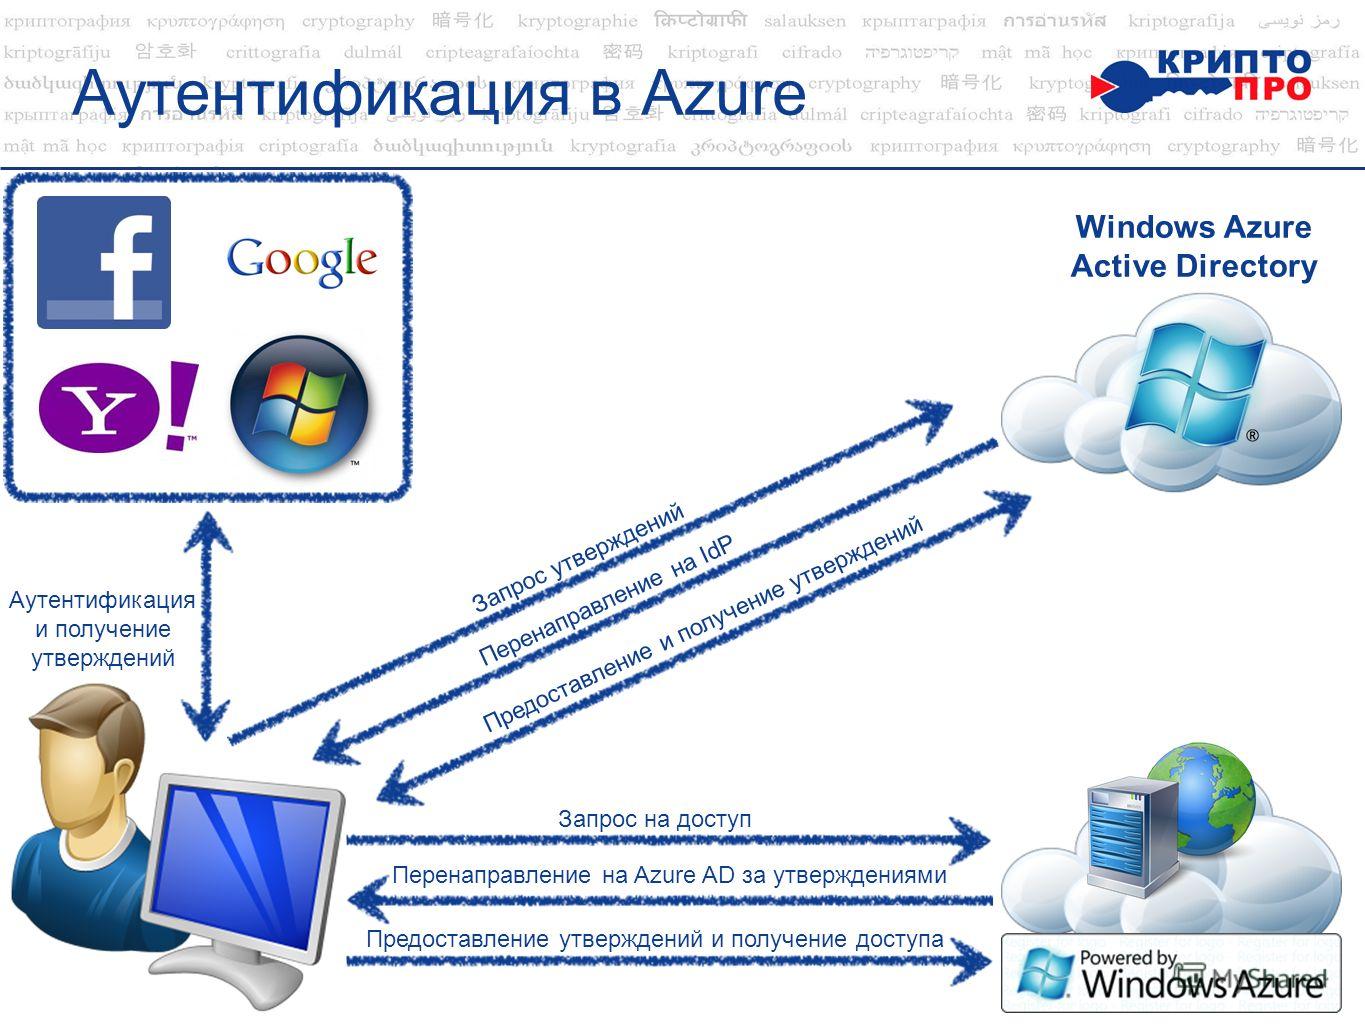 Аутентификация в Azure Aутентификация и получение утверждений Запрос на доступ Перенаправление на Azure AD за утверждениями Windows Azure Active Directory Предоставление утверждений и получение доступа Запрос утверждений Перенаправление на IdP Предос